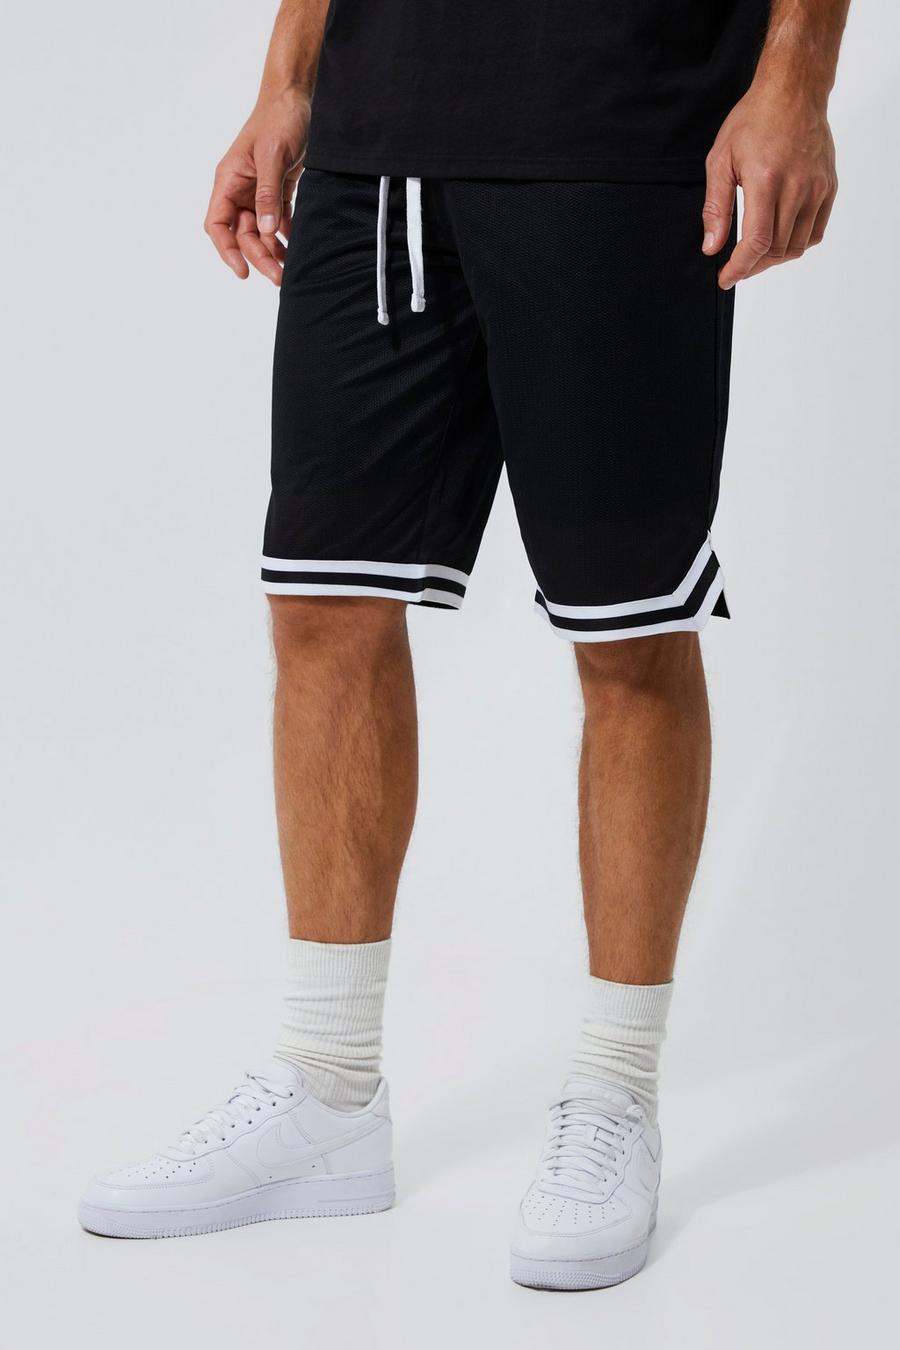 Pantaloncini da basket Tall in Airtex con fascia, Nero black